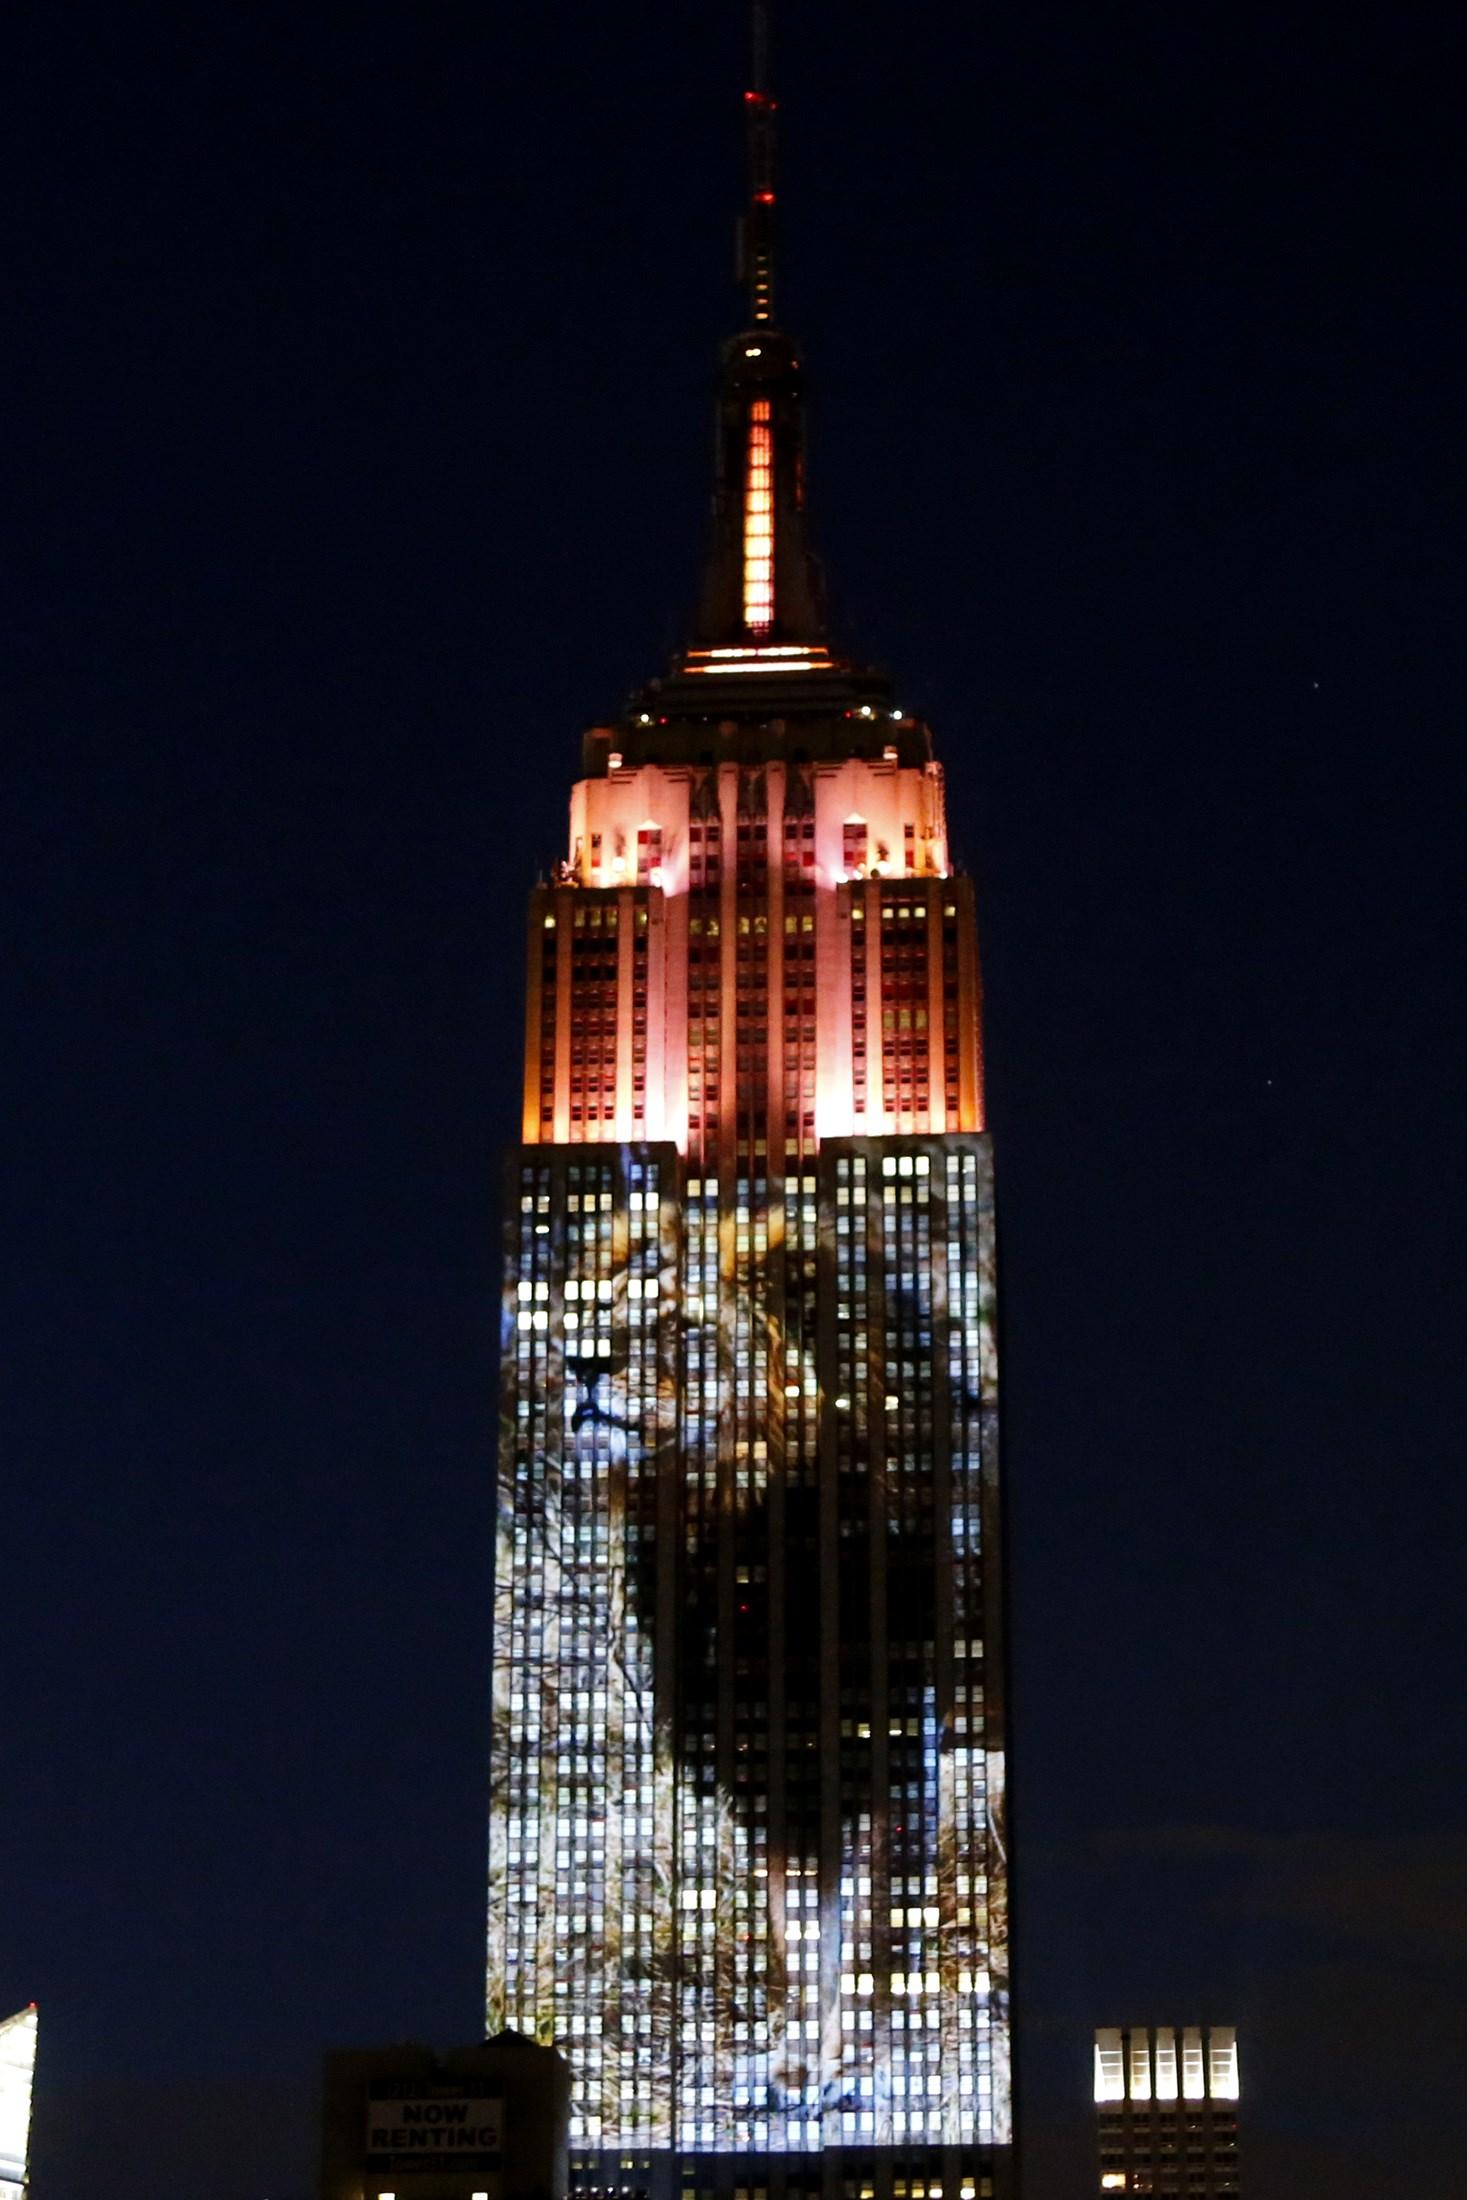 Projektionen täckte 33 våningar på en av New Yorks mest kända skyskrapor.